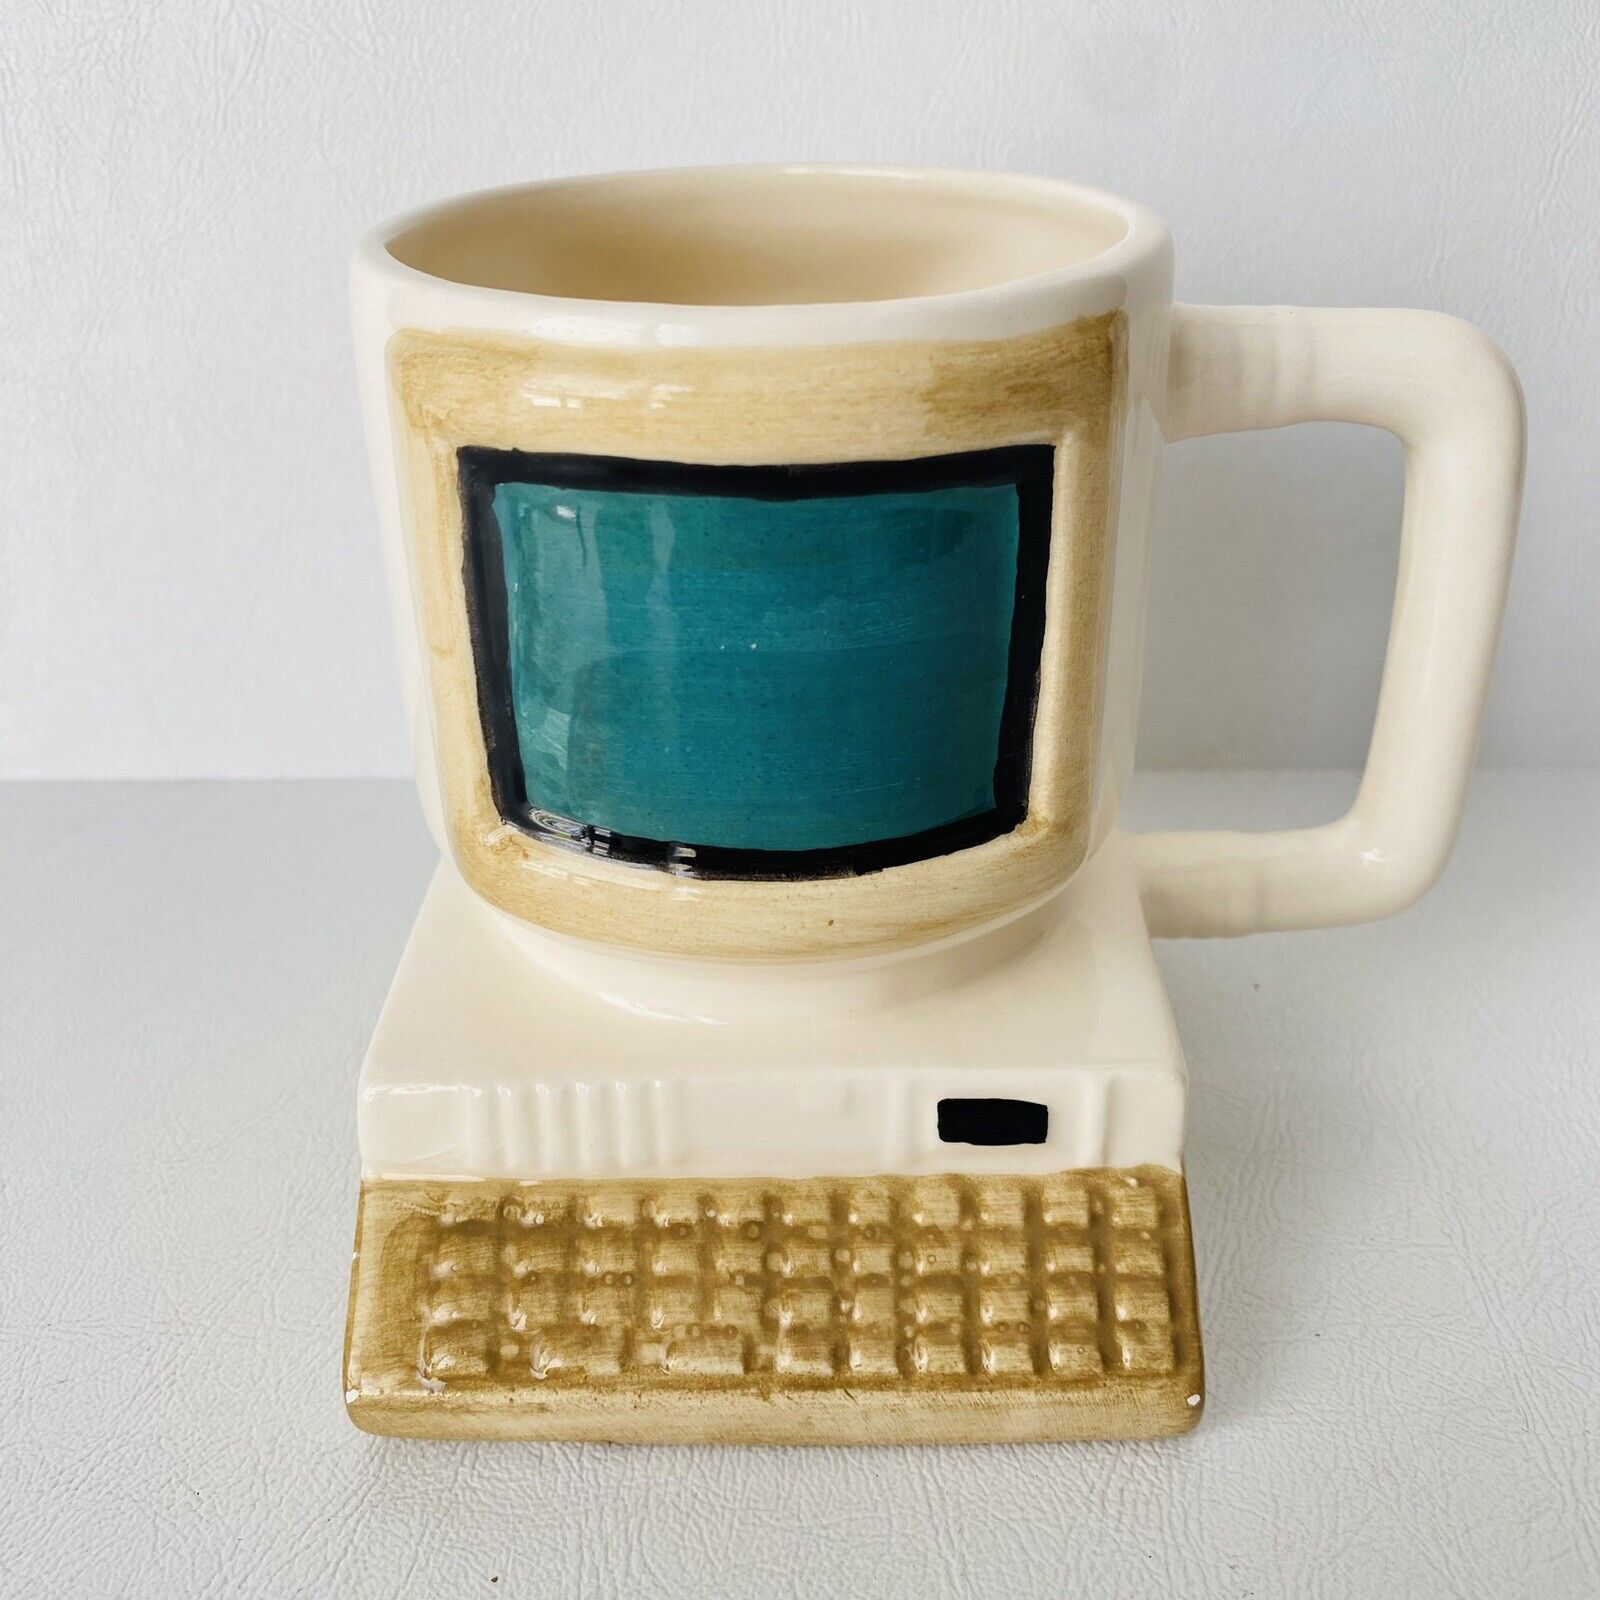 Vintage Desktop Computer Novelty Mug Planter 1992 Fred Hollinger Design IBM DOS